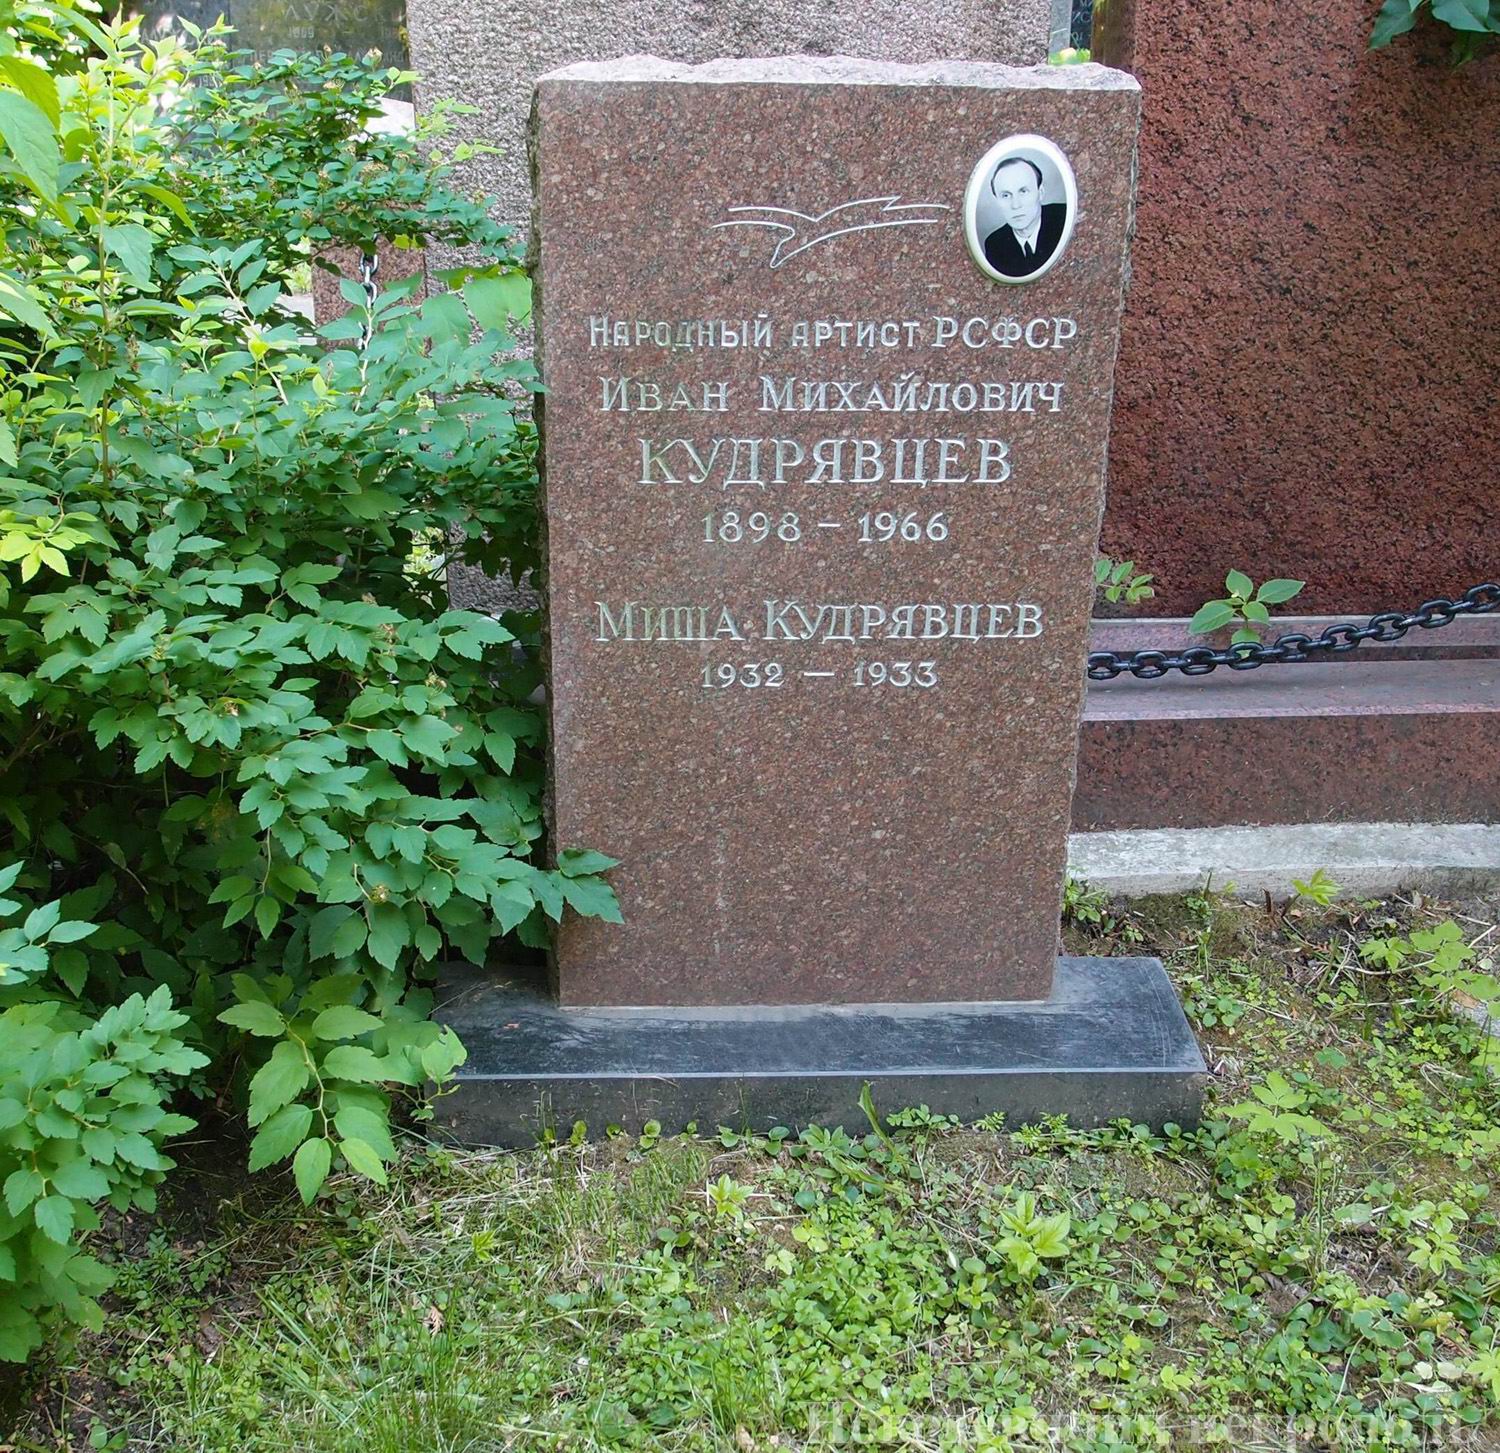 Памятник на могиле Кудрявцева И.М. (1898-1966), на Новодевичьем кладбище (2-5-15).